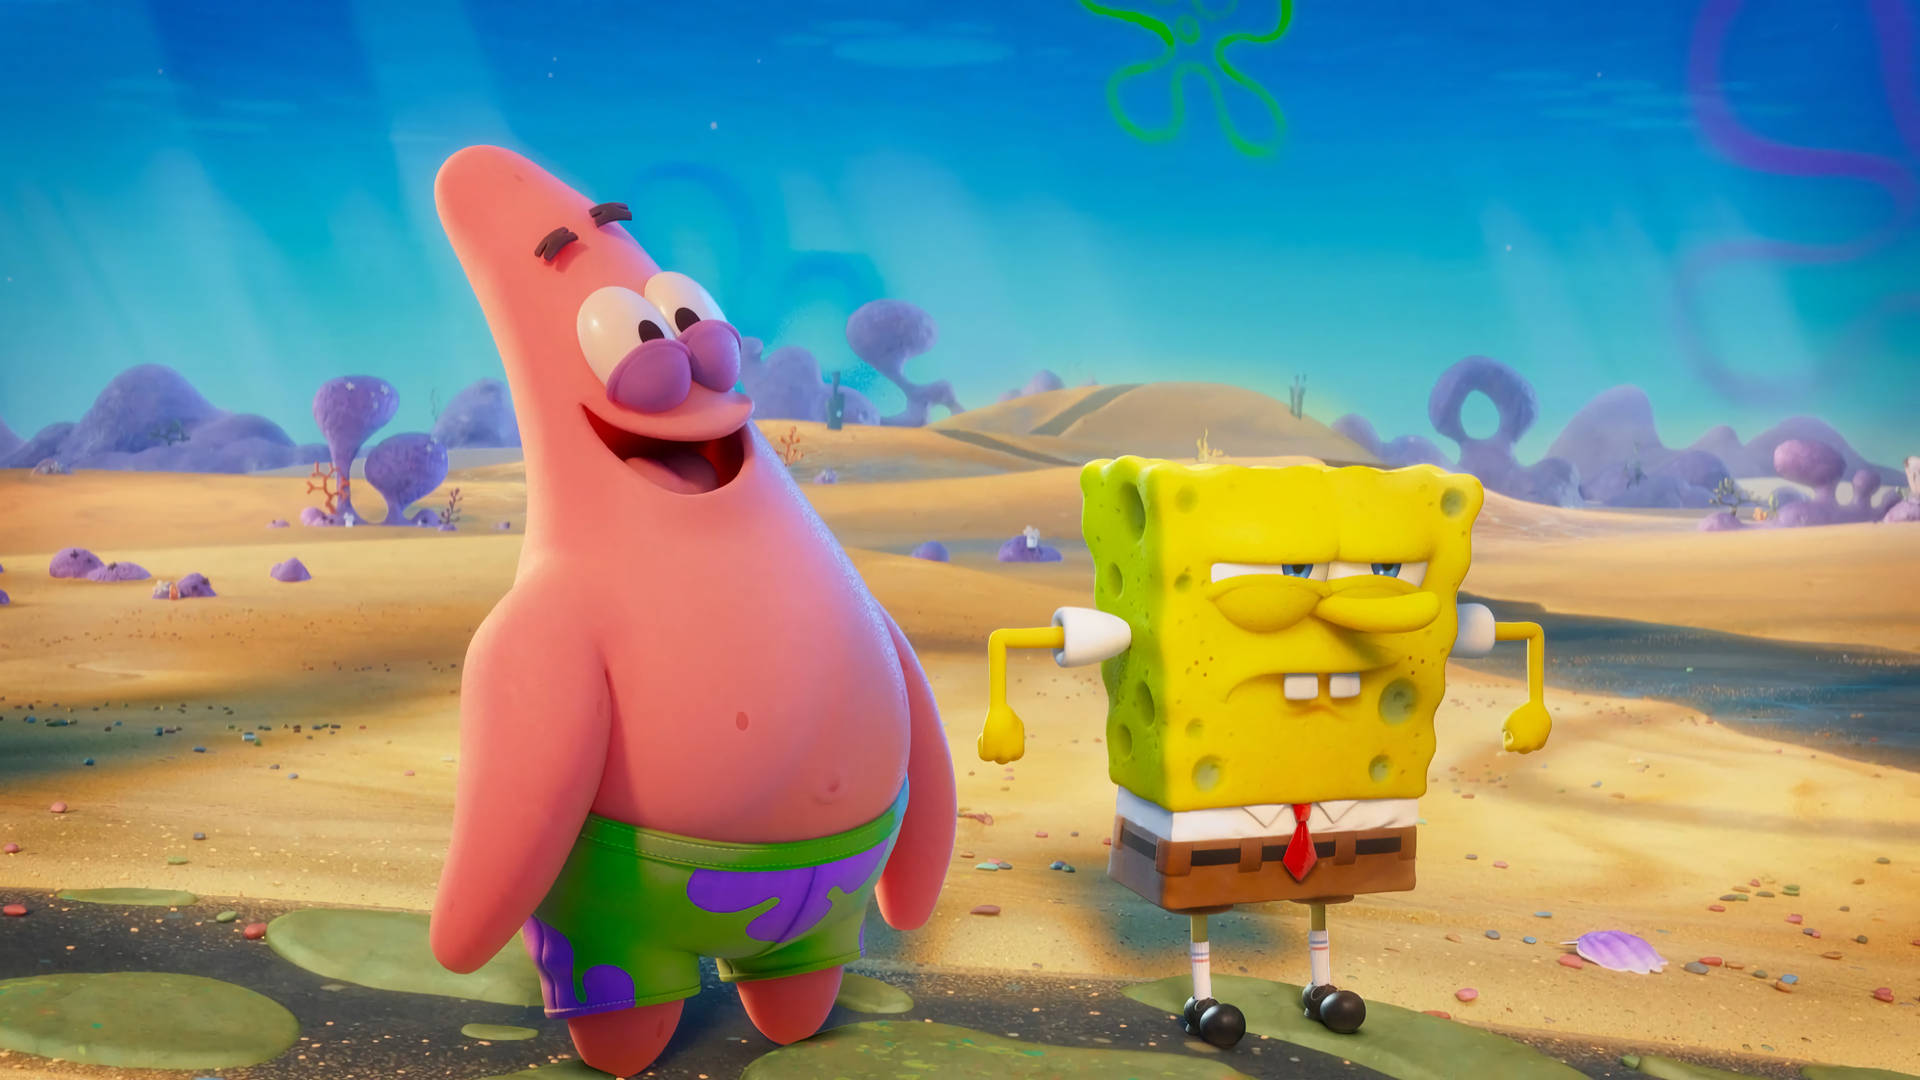 Planode Fundo Realista De Spongebob E Patrick Em 3d Para Computador. Papel de Parede